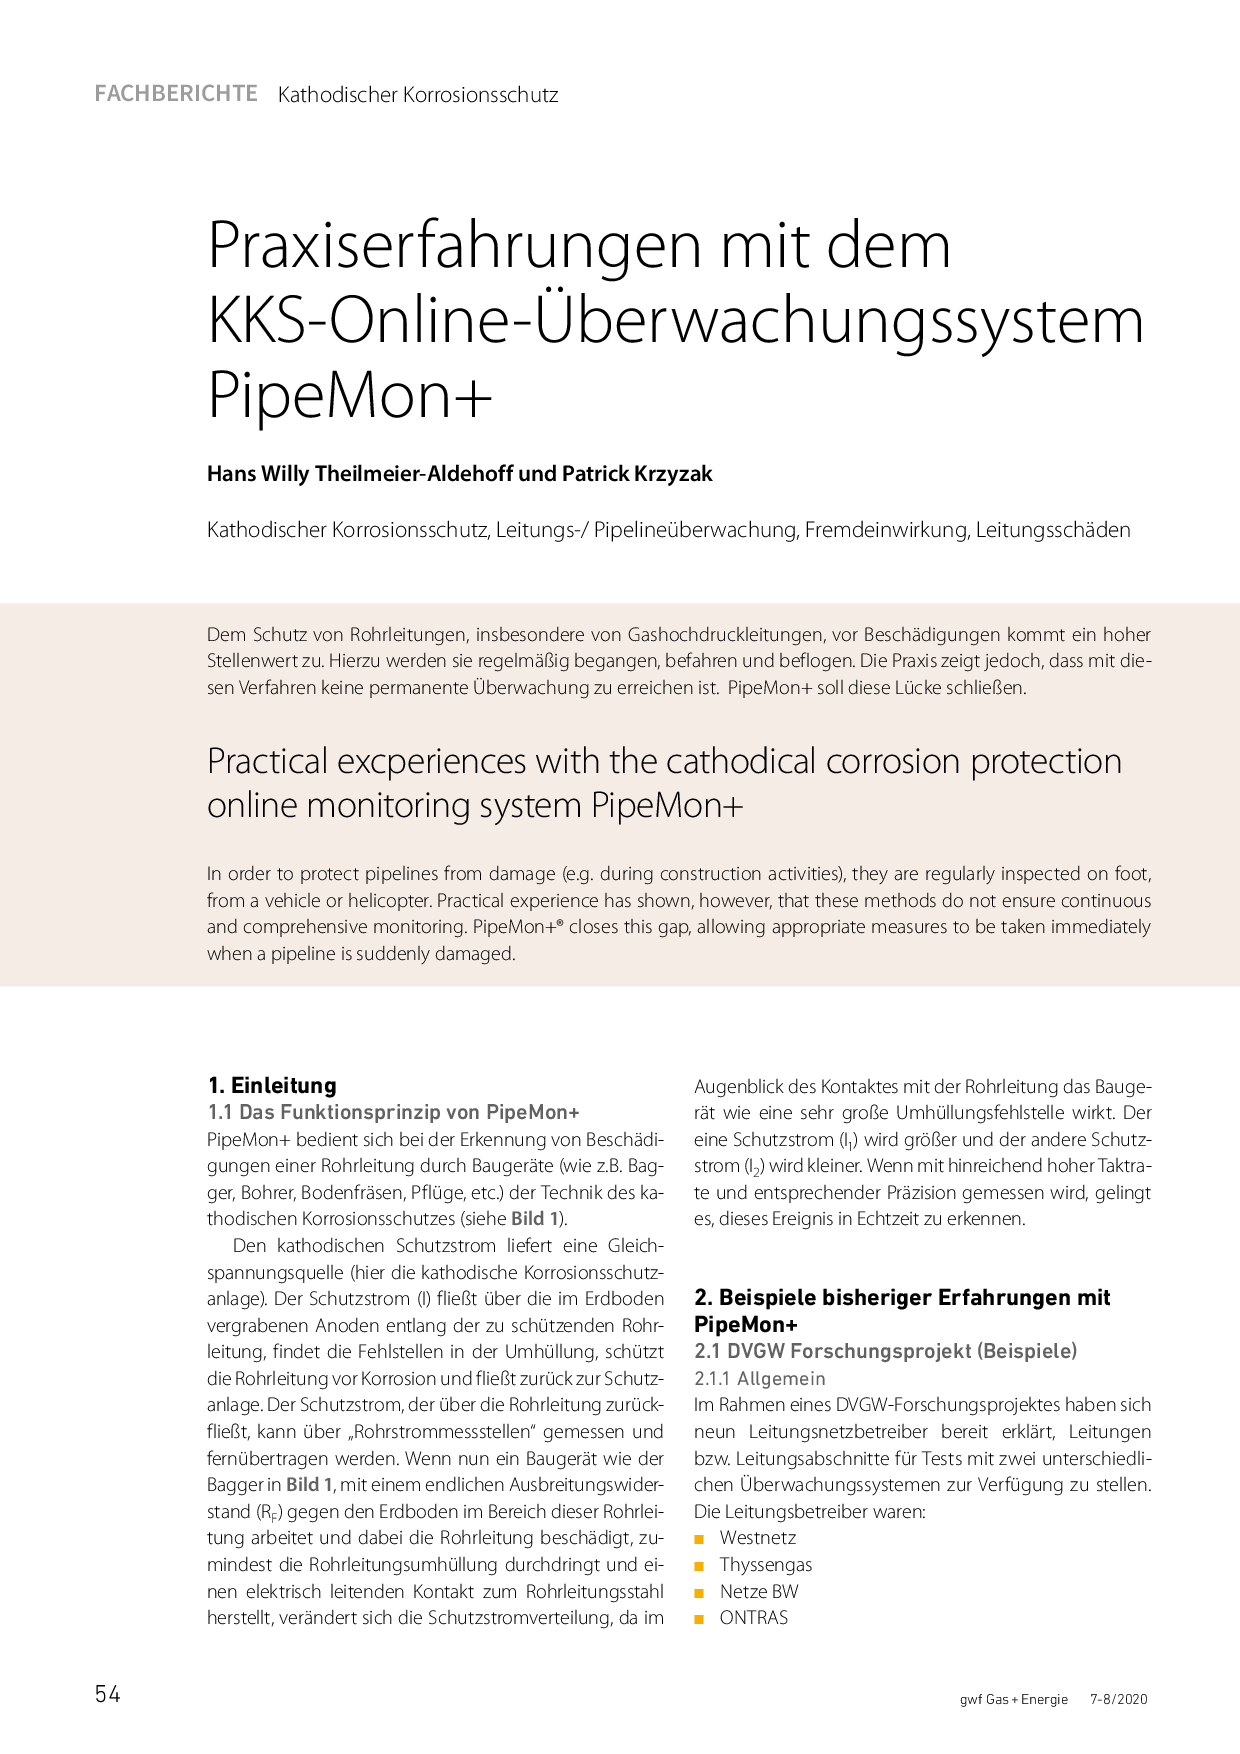 Praxiserfahrungen mit dem KKS-Online-Überwachungssystem PipeMon+